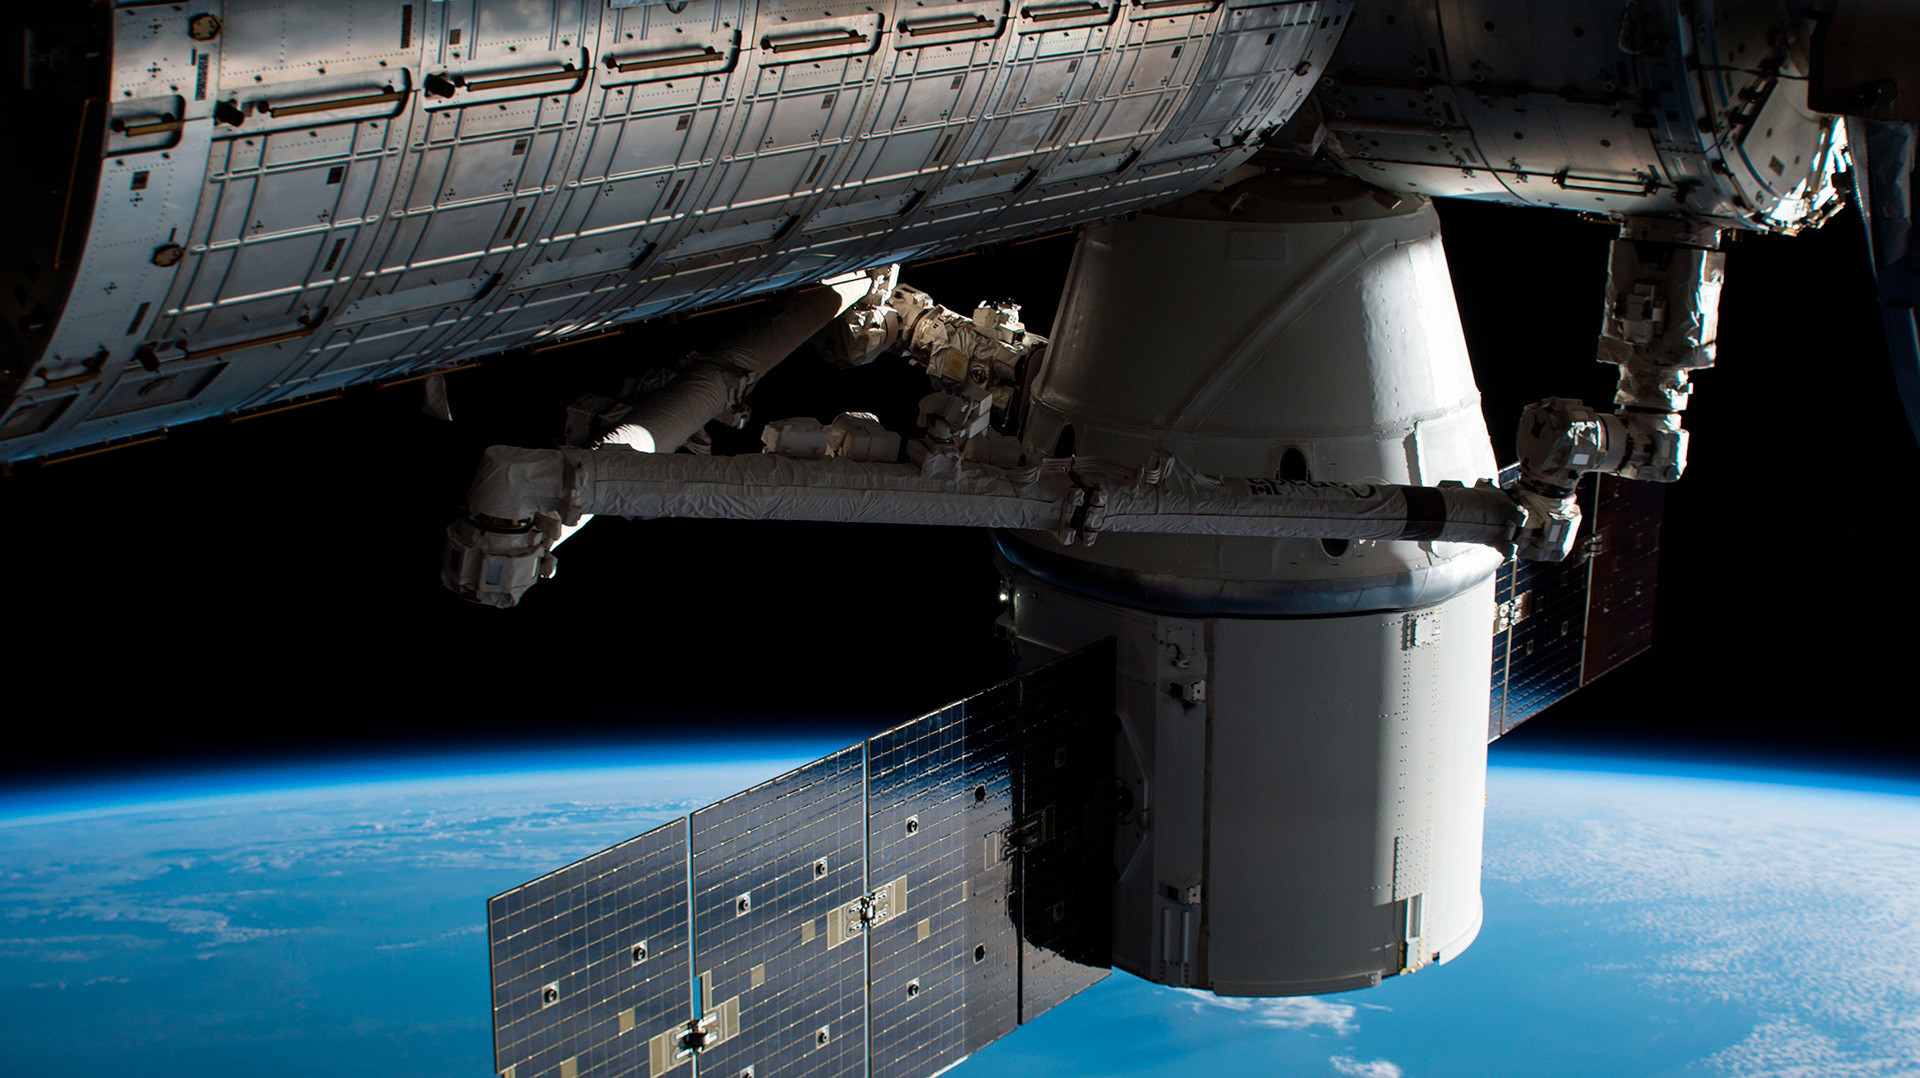 De acordo com o astrônomo David Whitehouse, a Estação Espacial Internacional (ISS) será desativada na próxima década e levada cuidadosamente para o polo de inacessibilidade.